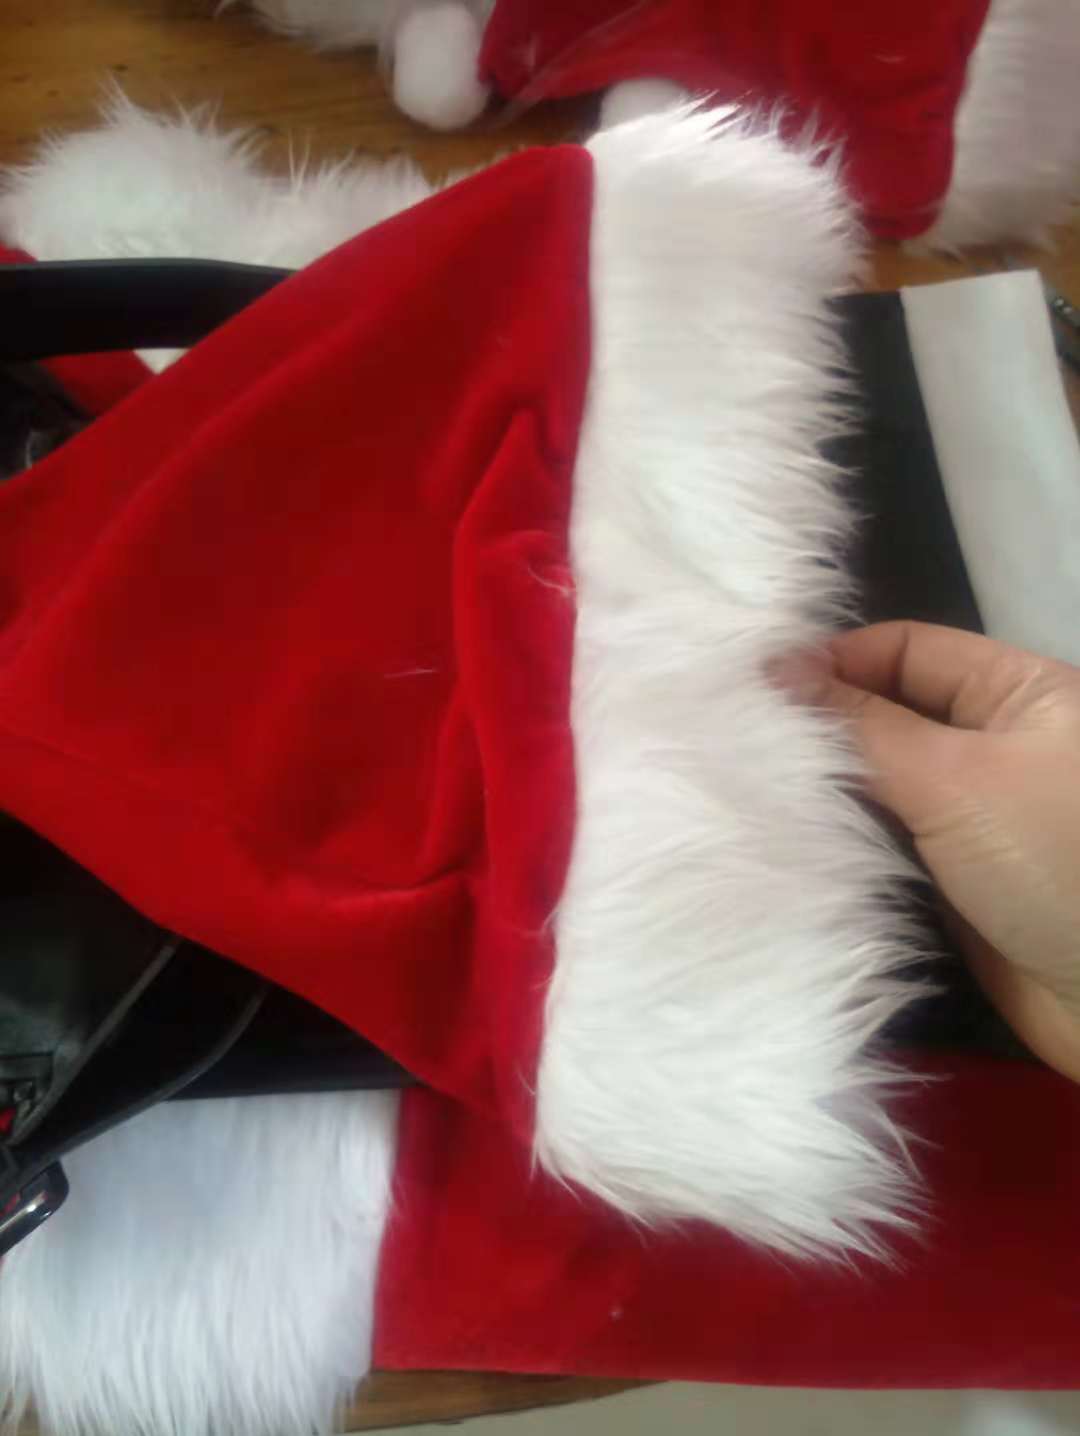 FC151 santa claus costume for men